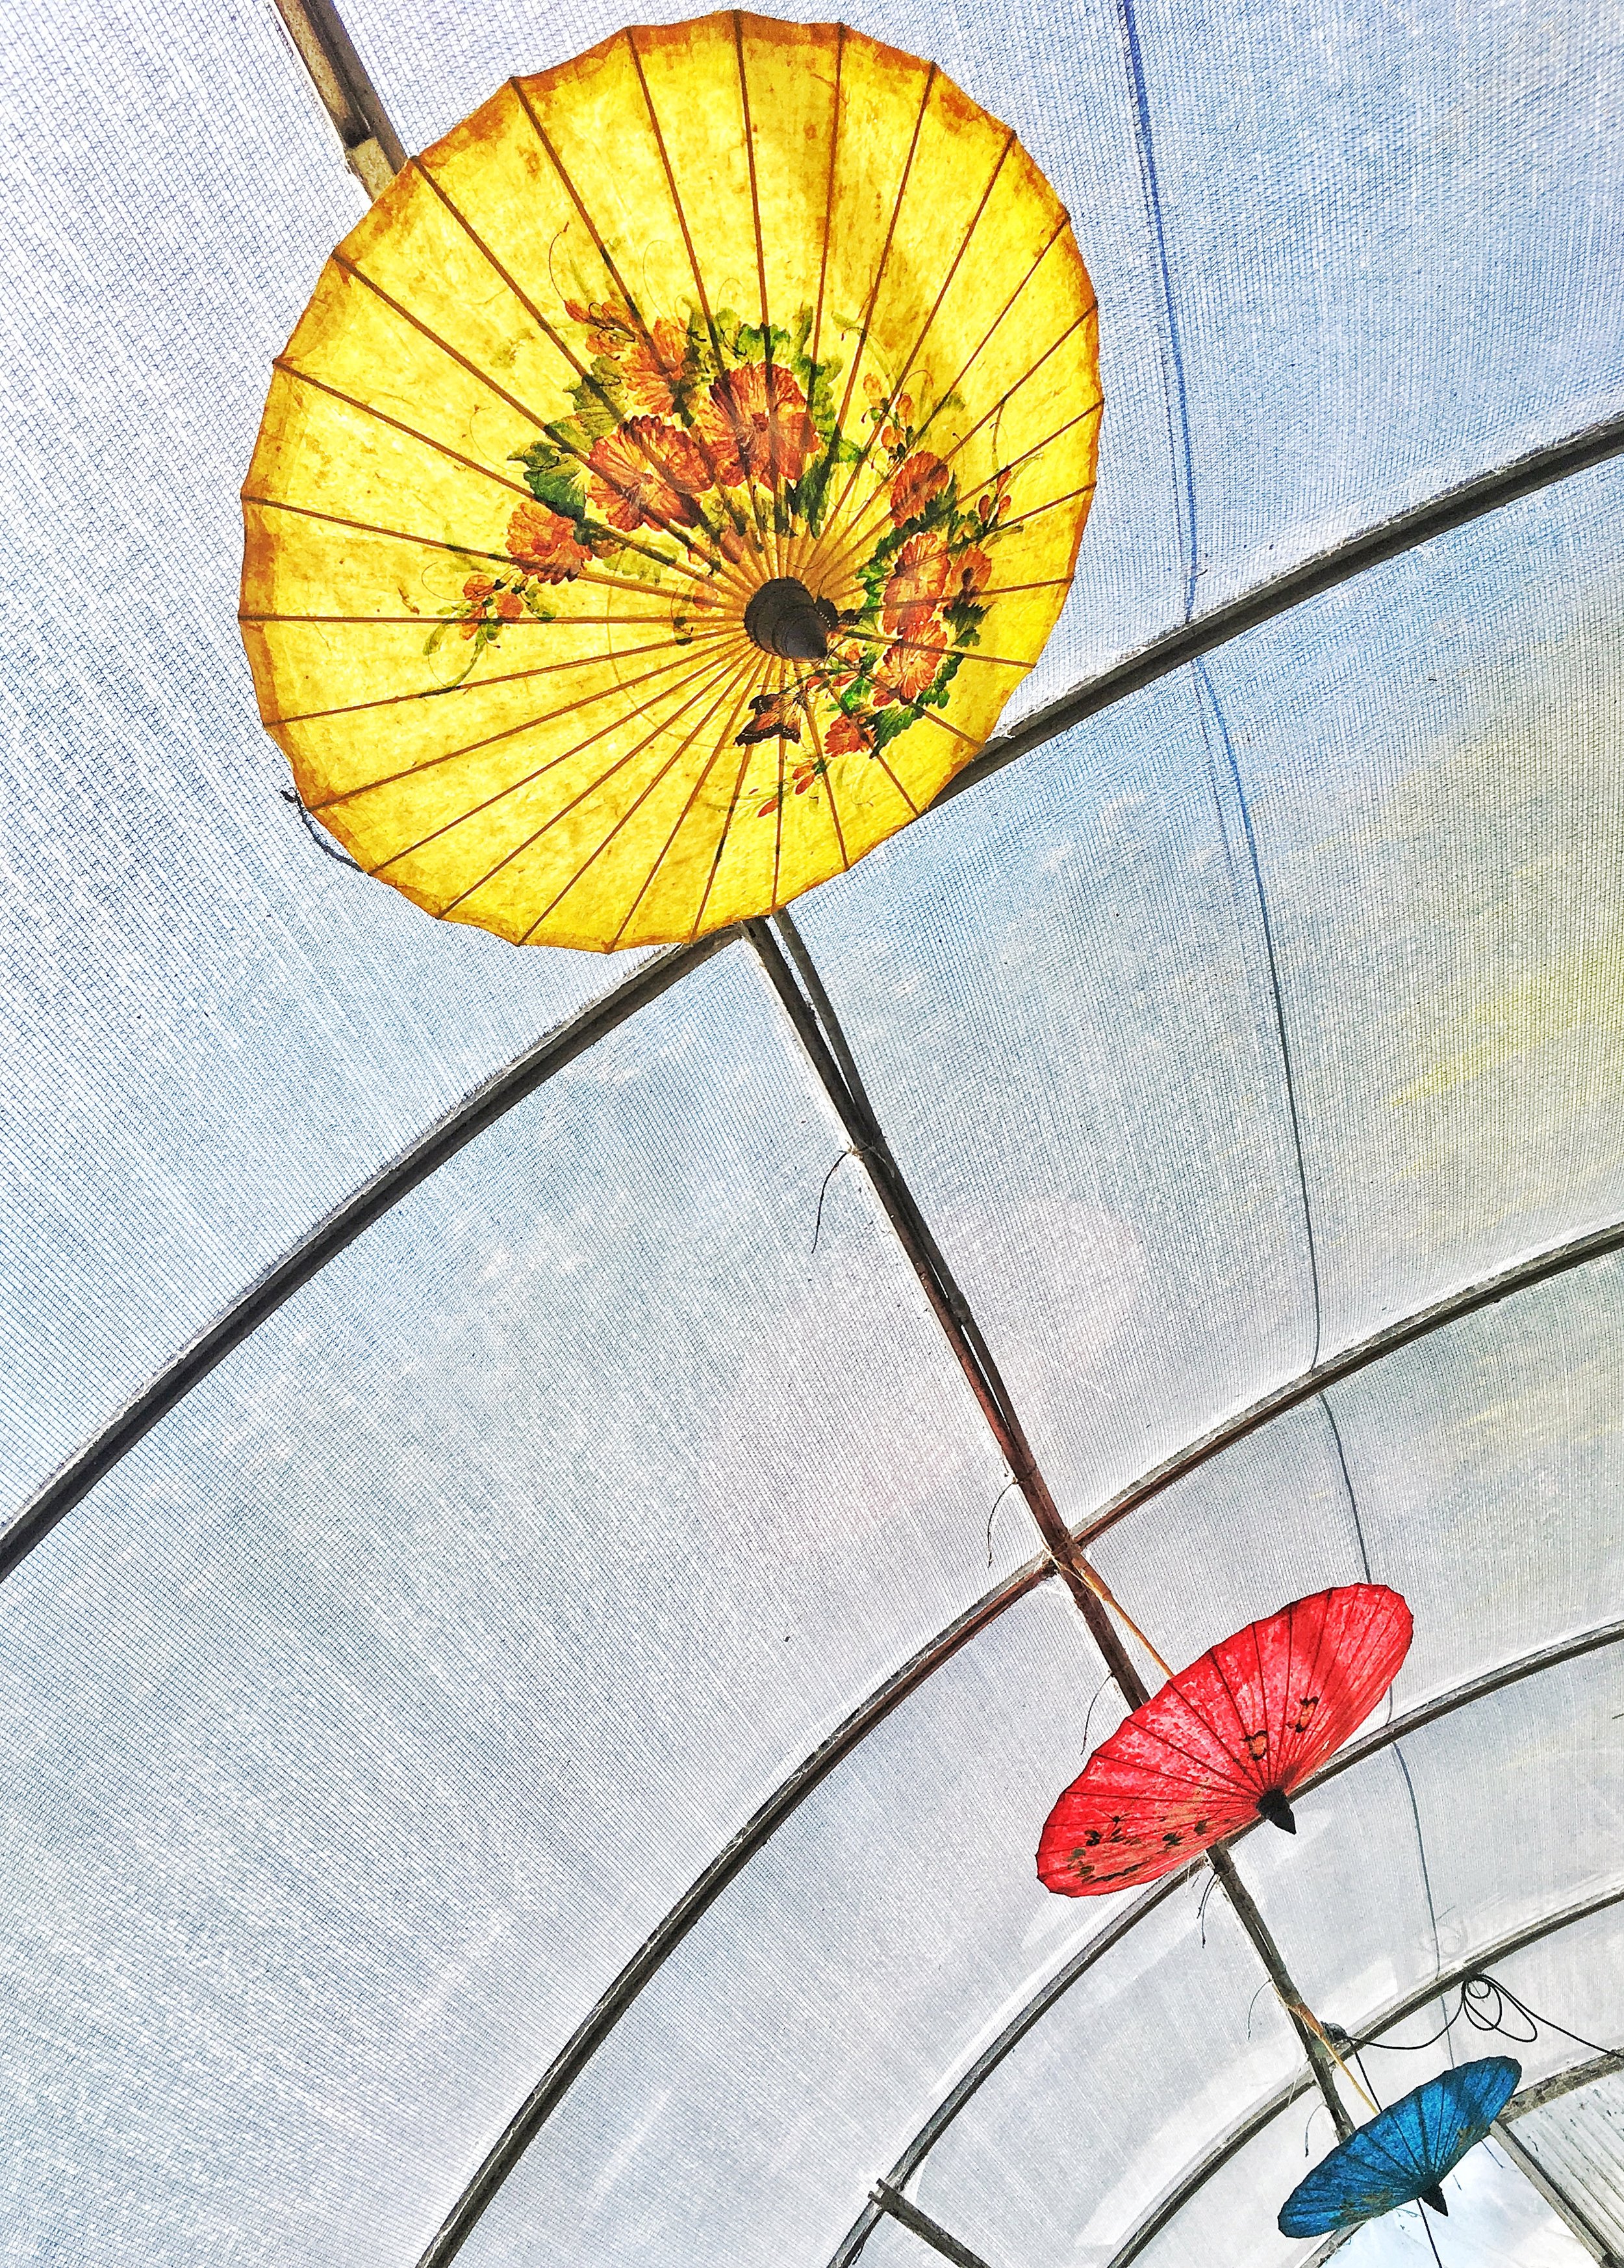 Primary color parasols